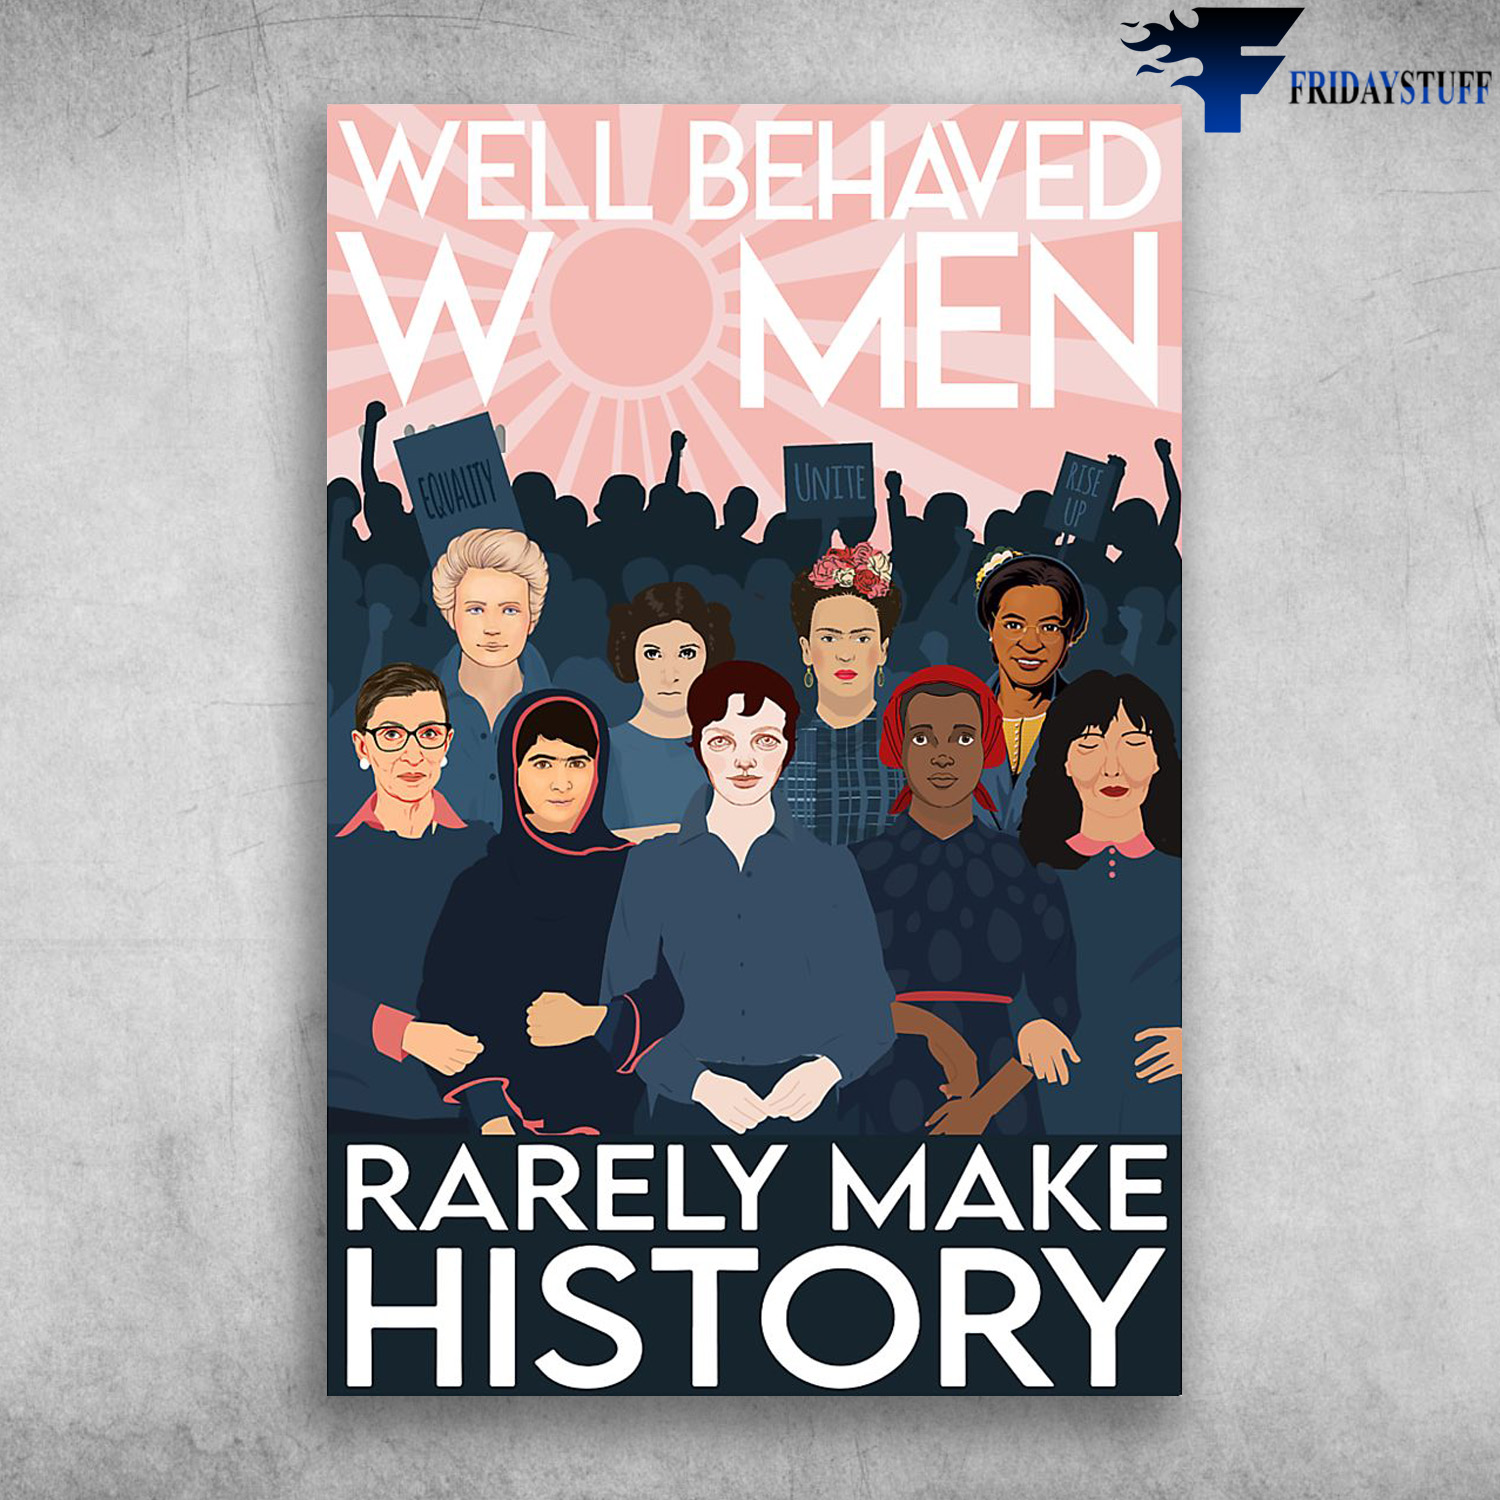 RBG Feminist - Well Behaved Women Rarely Make History